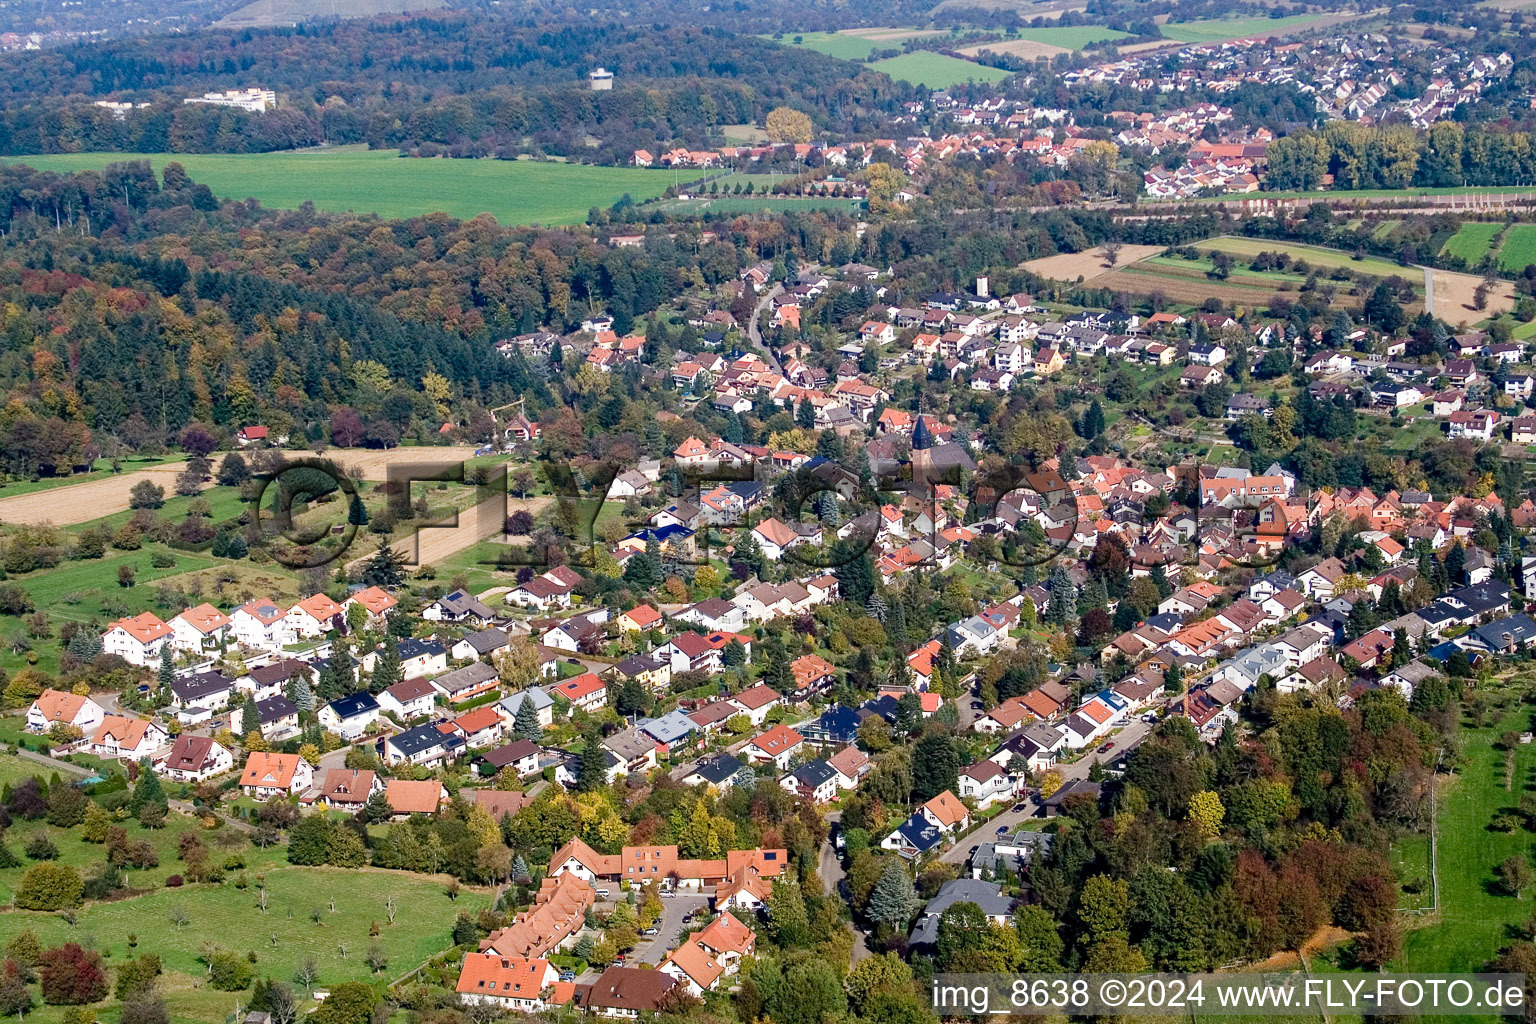 Luftbild von Dorf - Ansicht im Ortsteil Grünwettersbach in Karlsruhe im Bundesland Baden-Württemberg, Deutschland